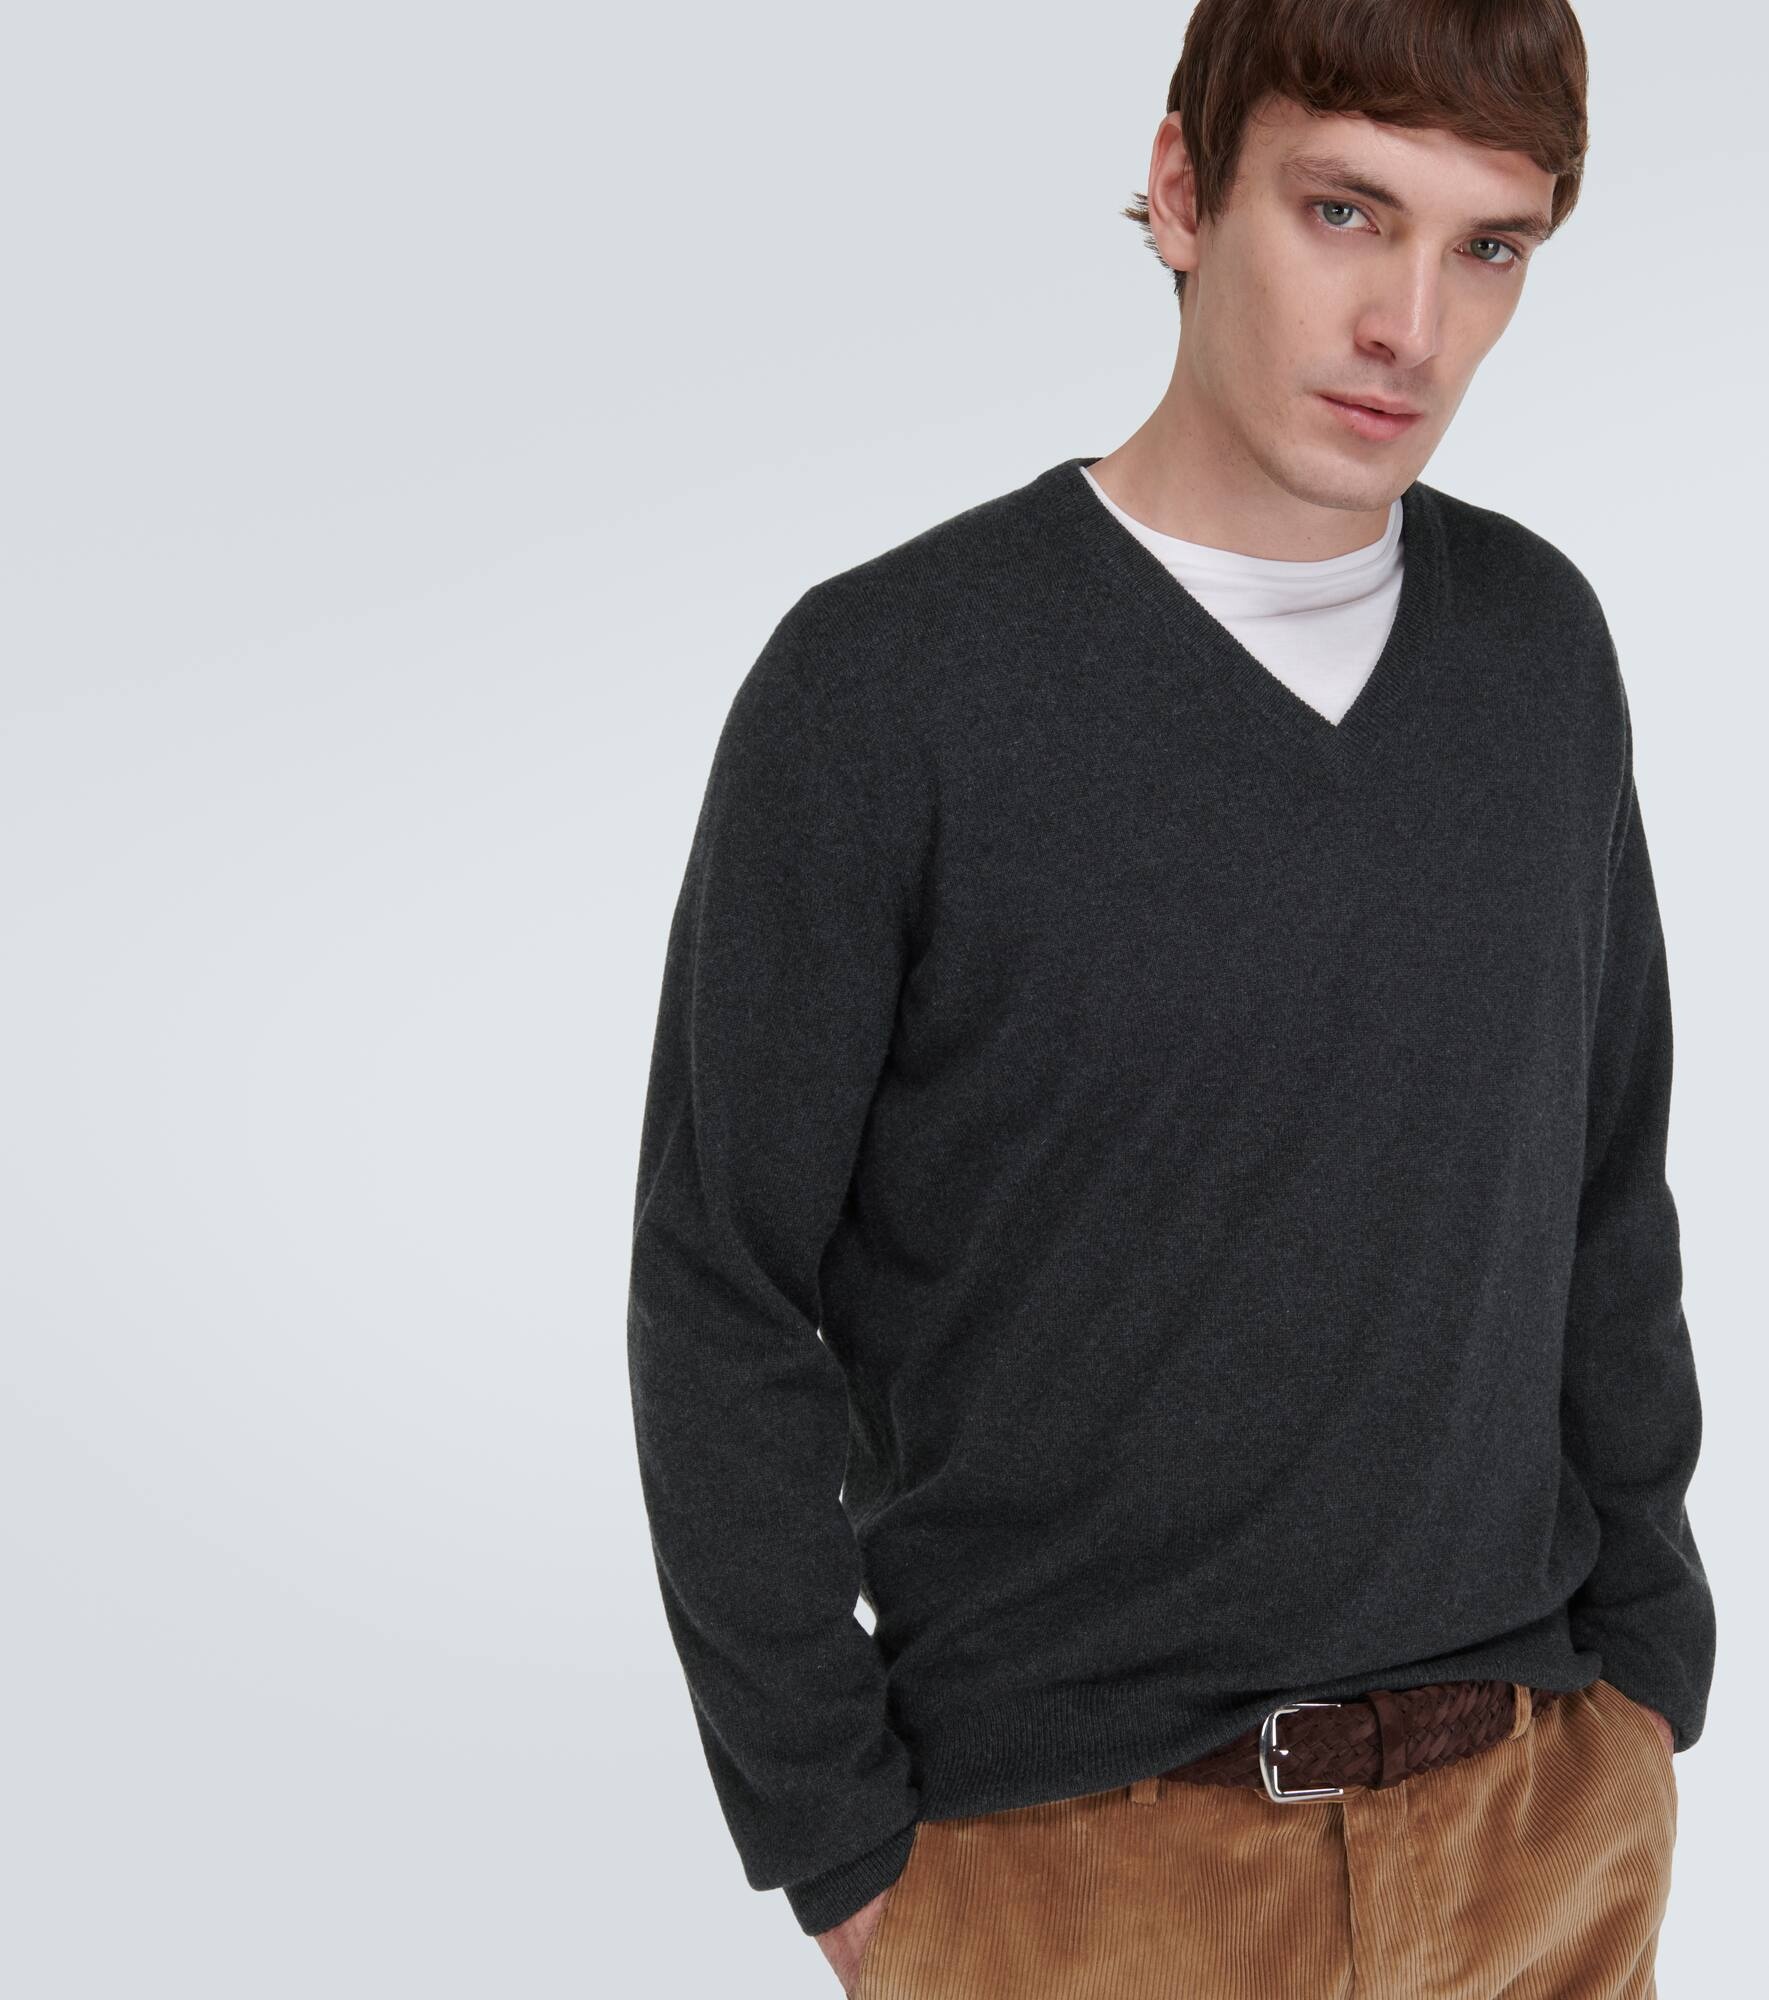 Scollo cashmere sweater - 5